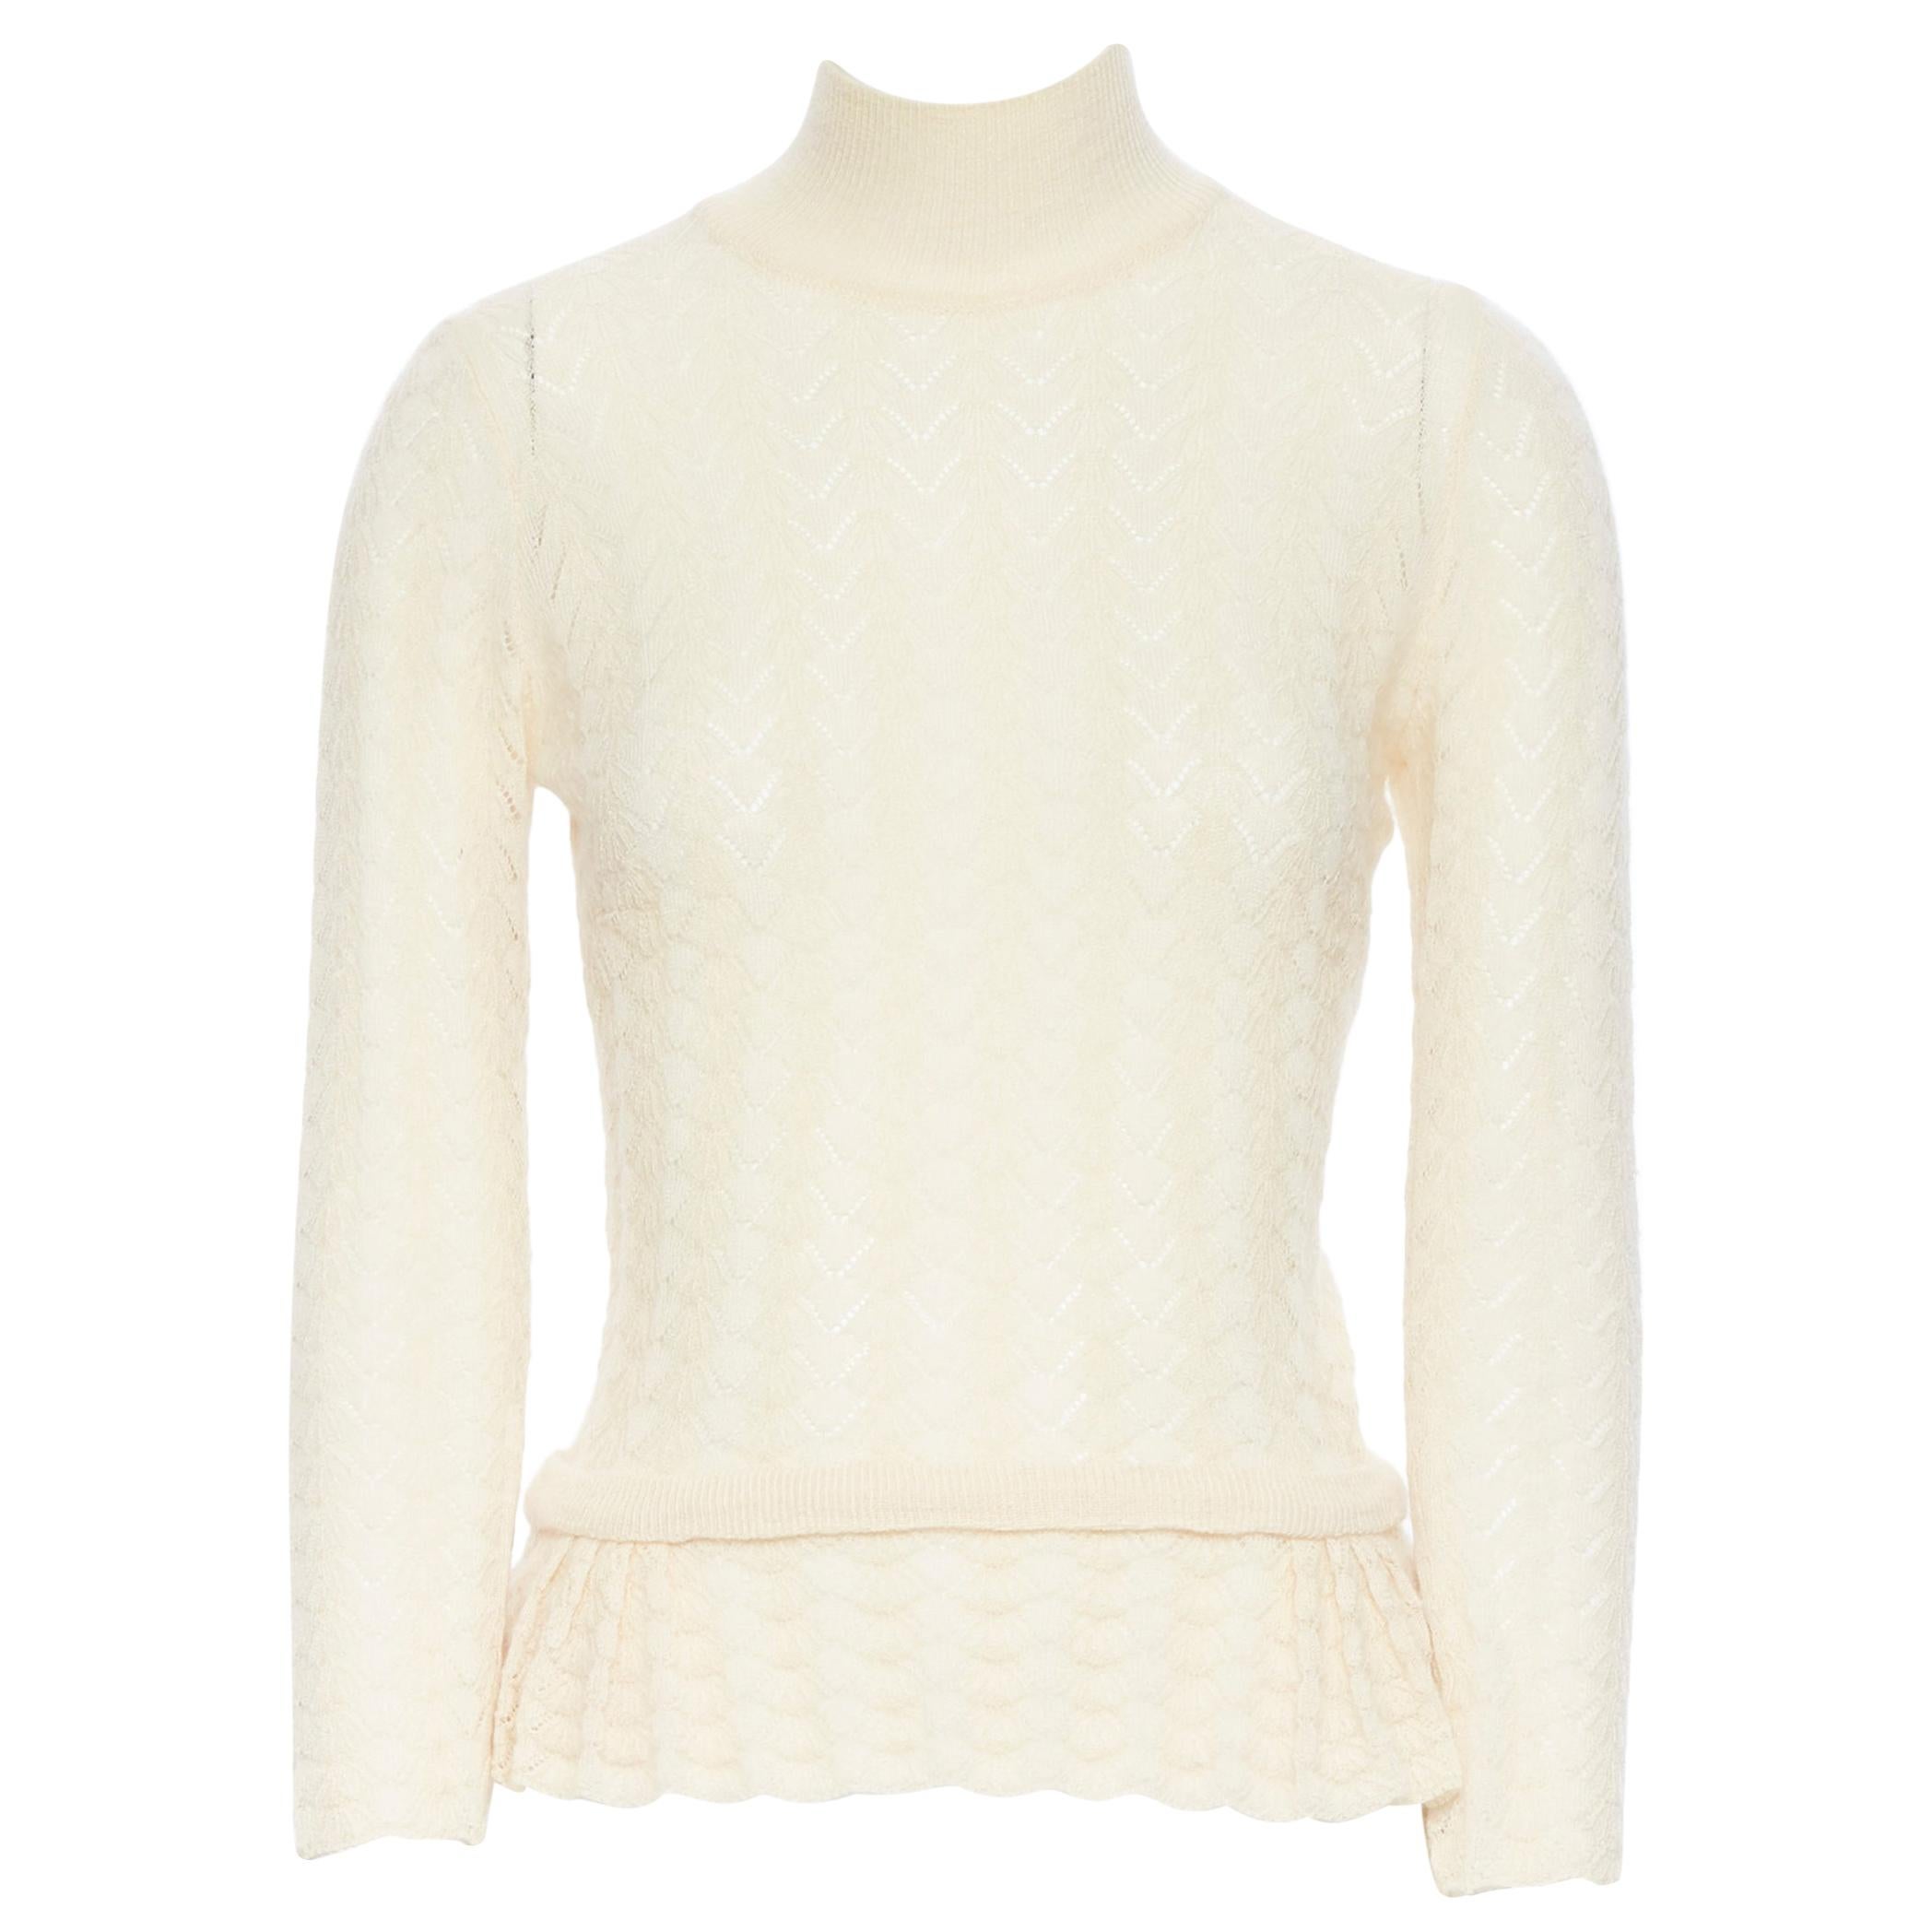 LOUIS VUITTON 100% cashmere cream beige lace knit  turtleneck sweater top M